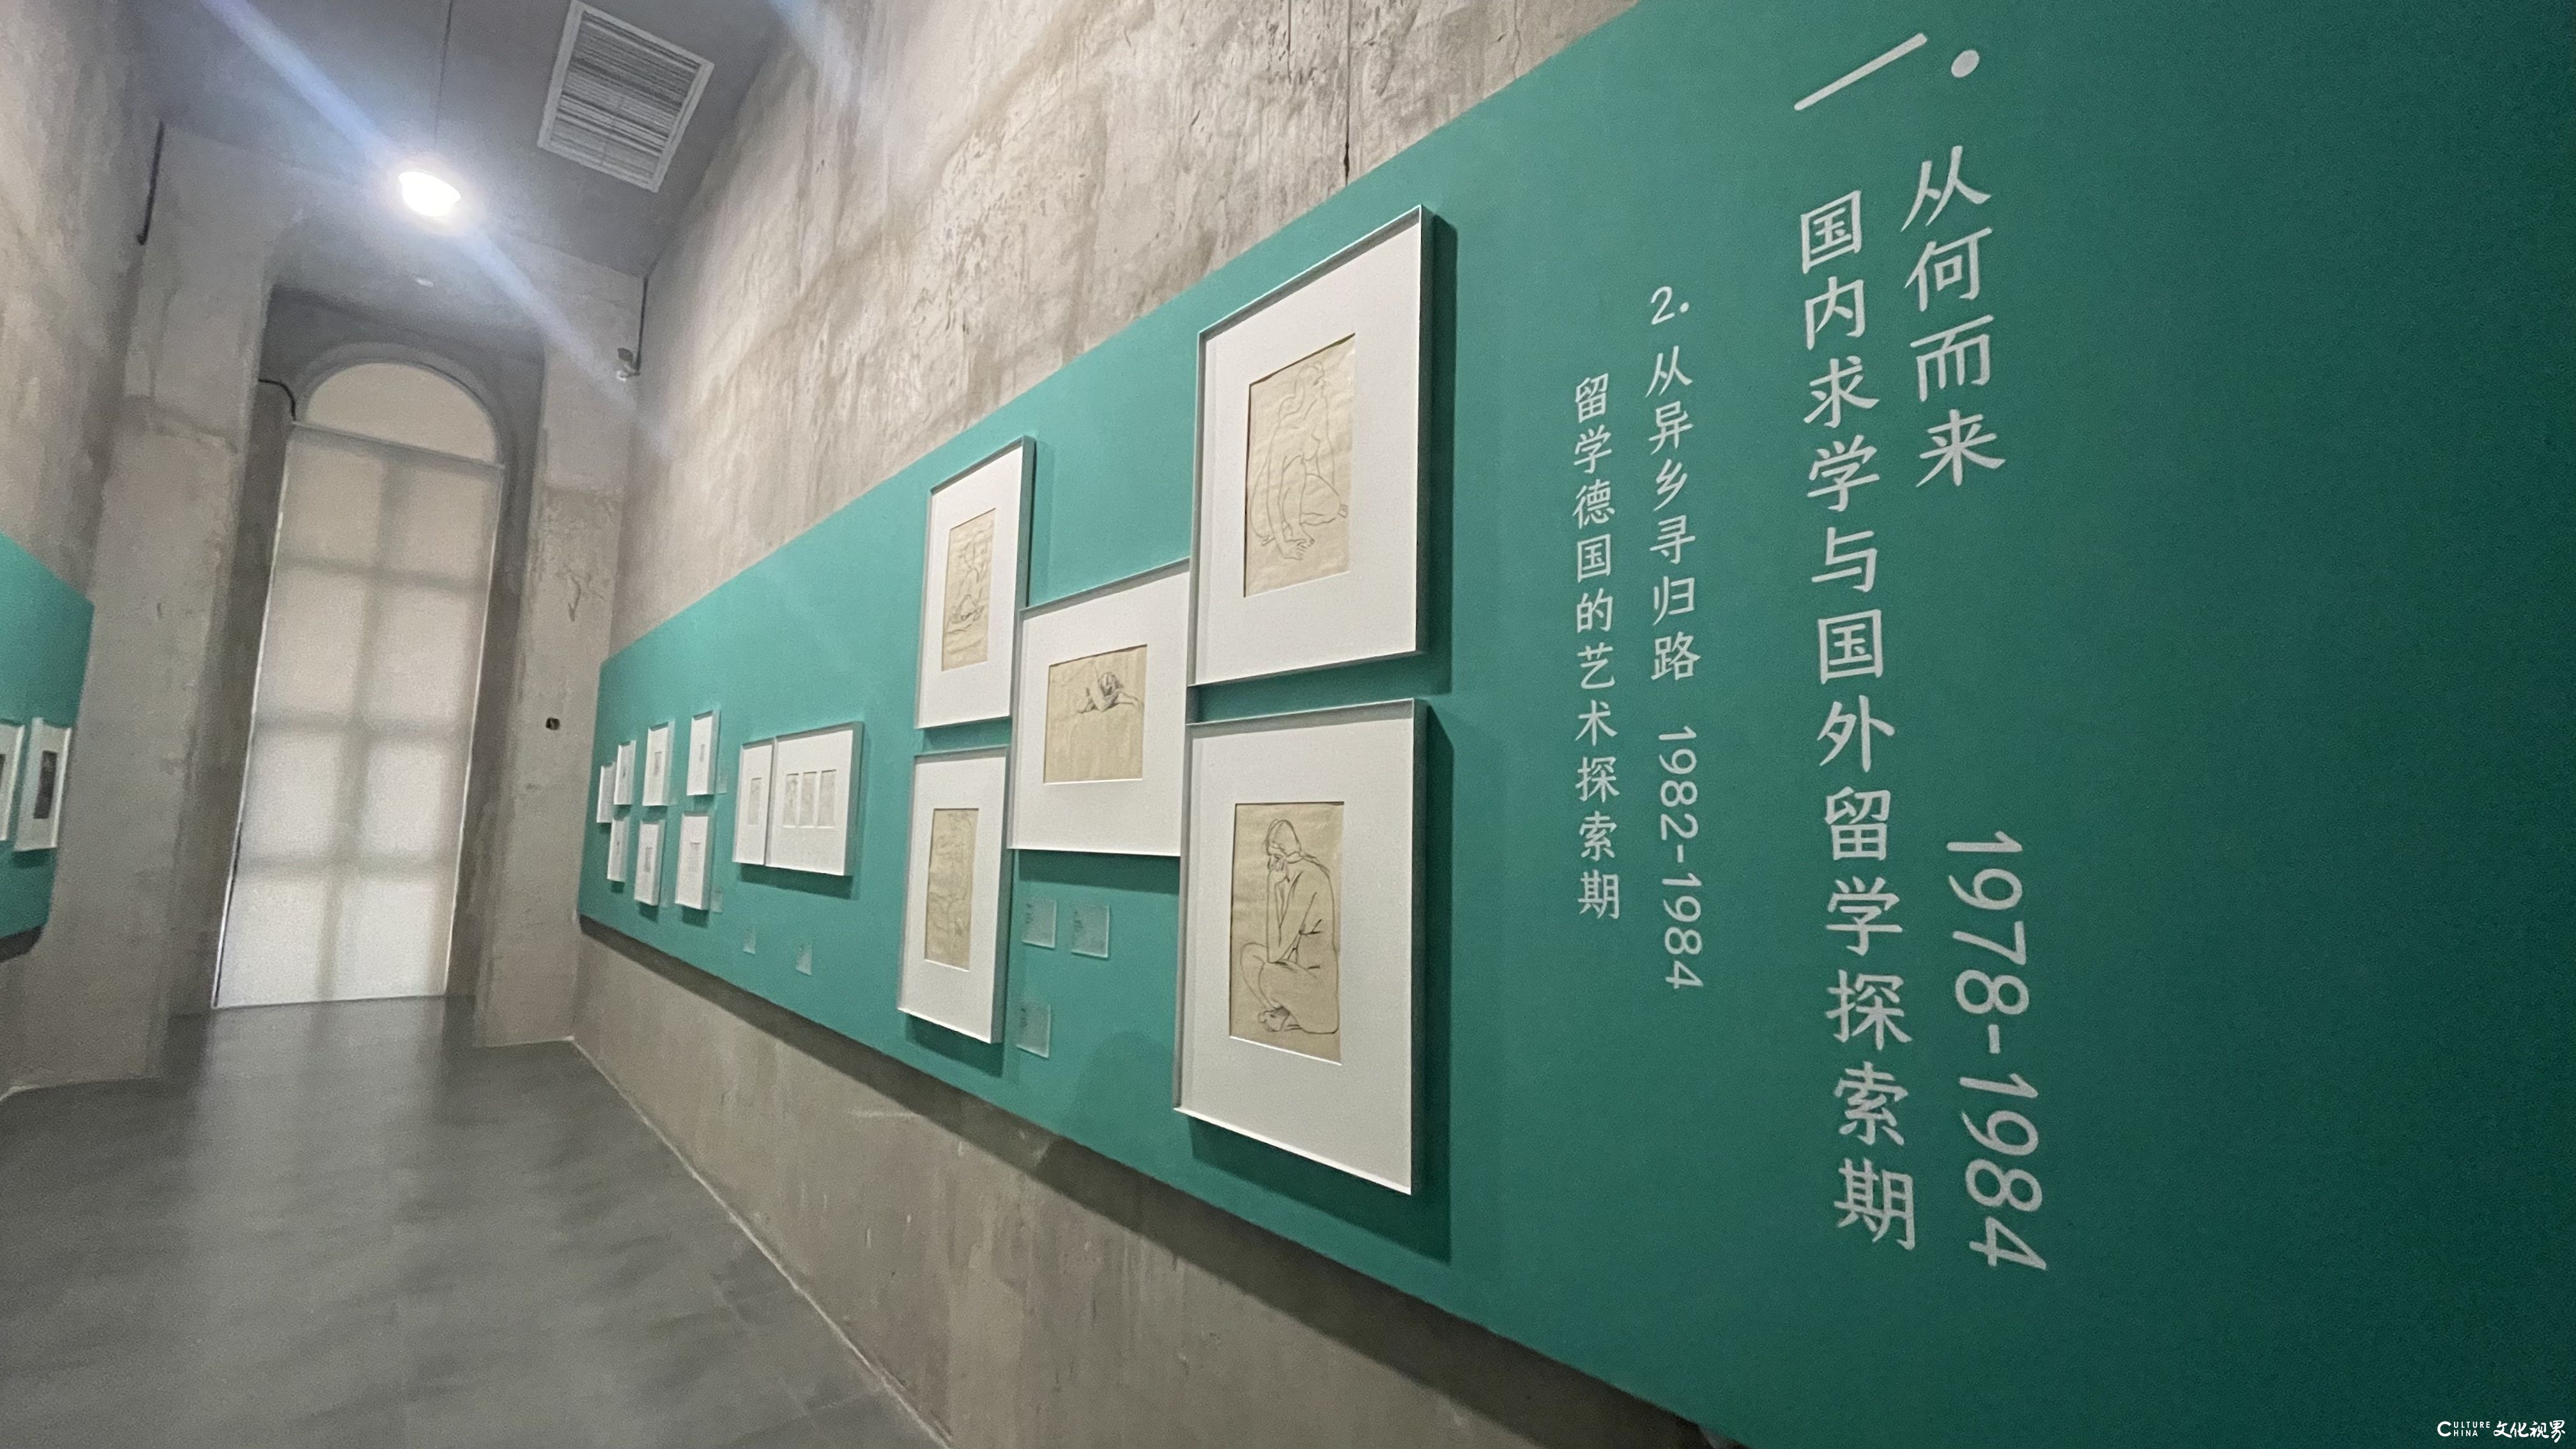 “从表象到炁象——马路45年艺术发现之路展”在北京盛大开幕